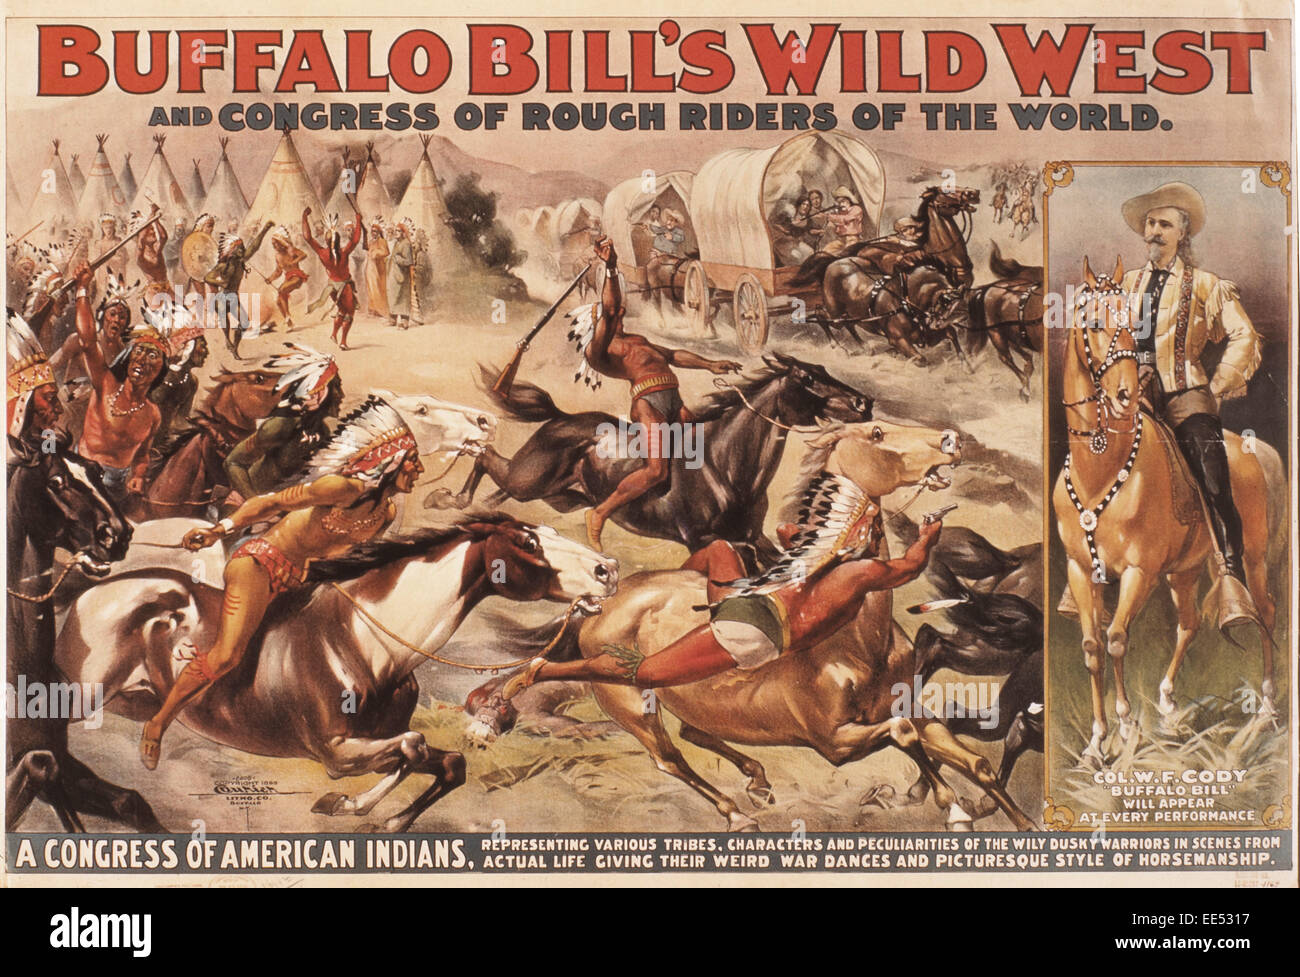 Buffalo Bills Wildwest und Kongress von Rough Riders der Welt, amerikanische Indianer angreifenden Pioniere im Planwagen, Zirkus-Plakat, ca. 1899 Stockfoto